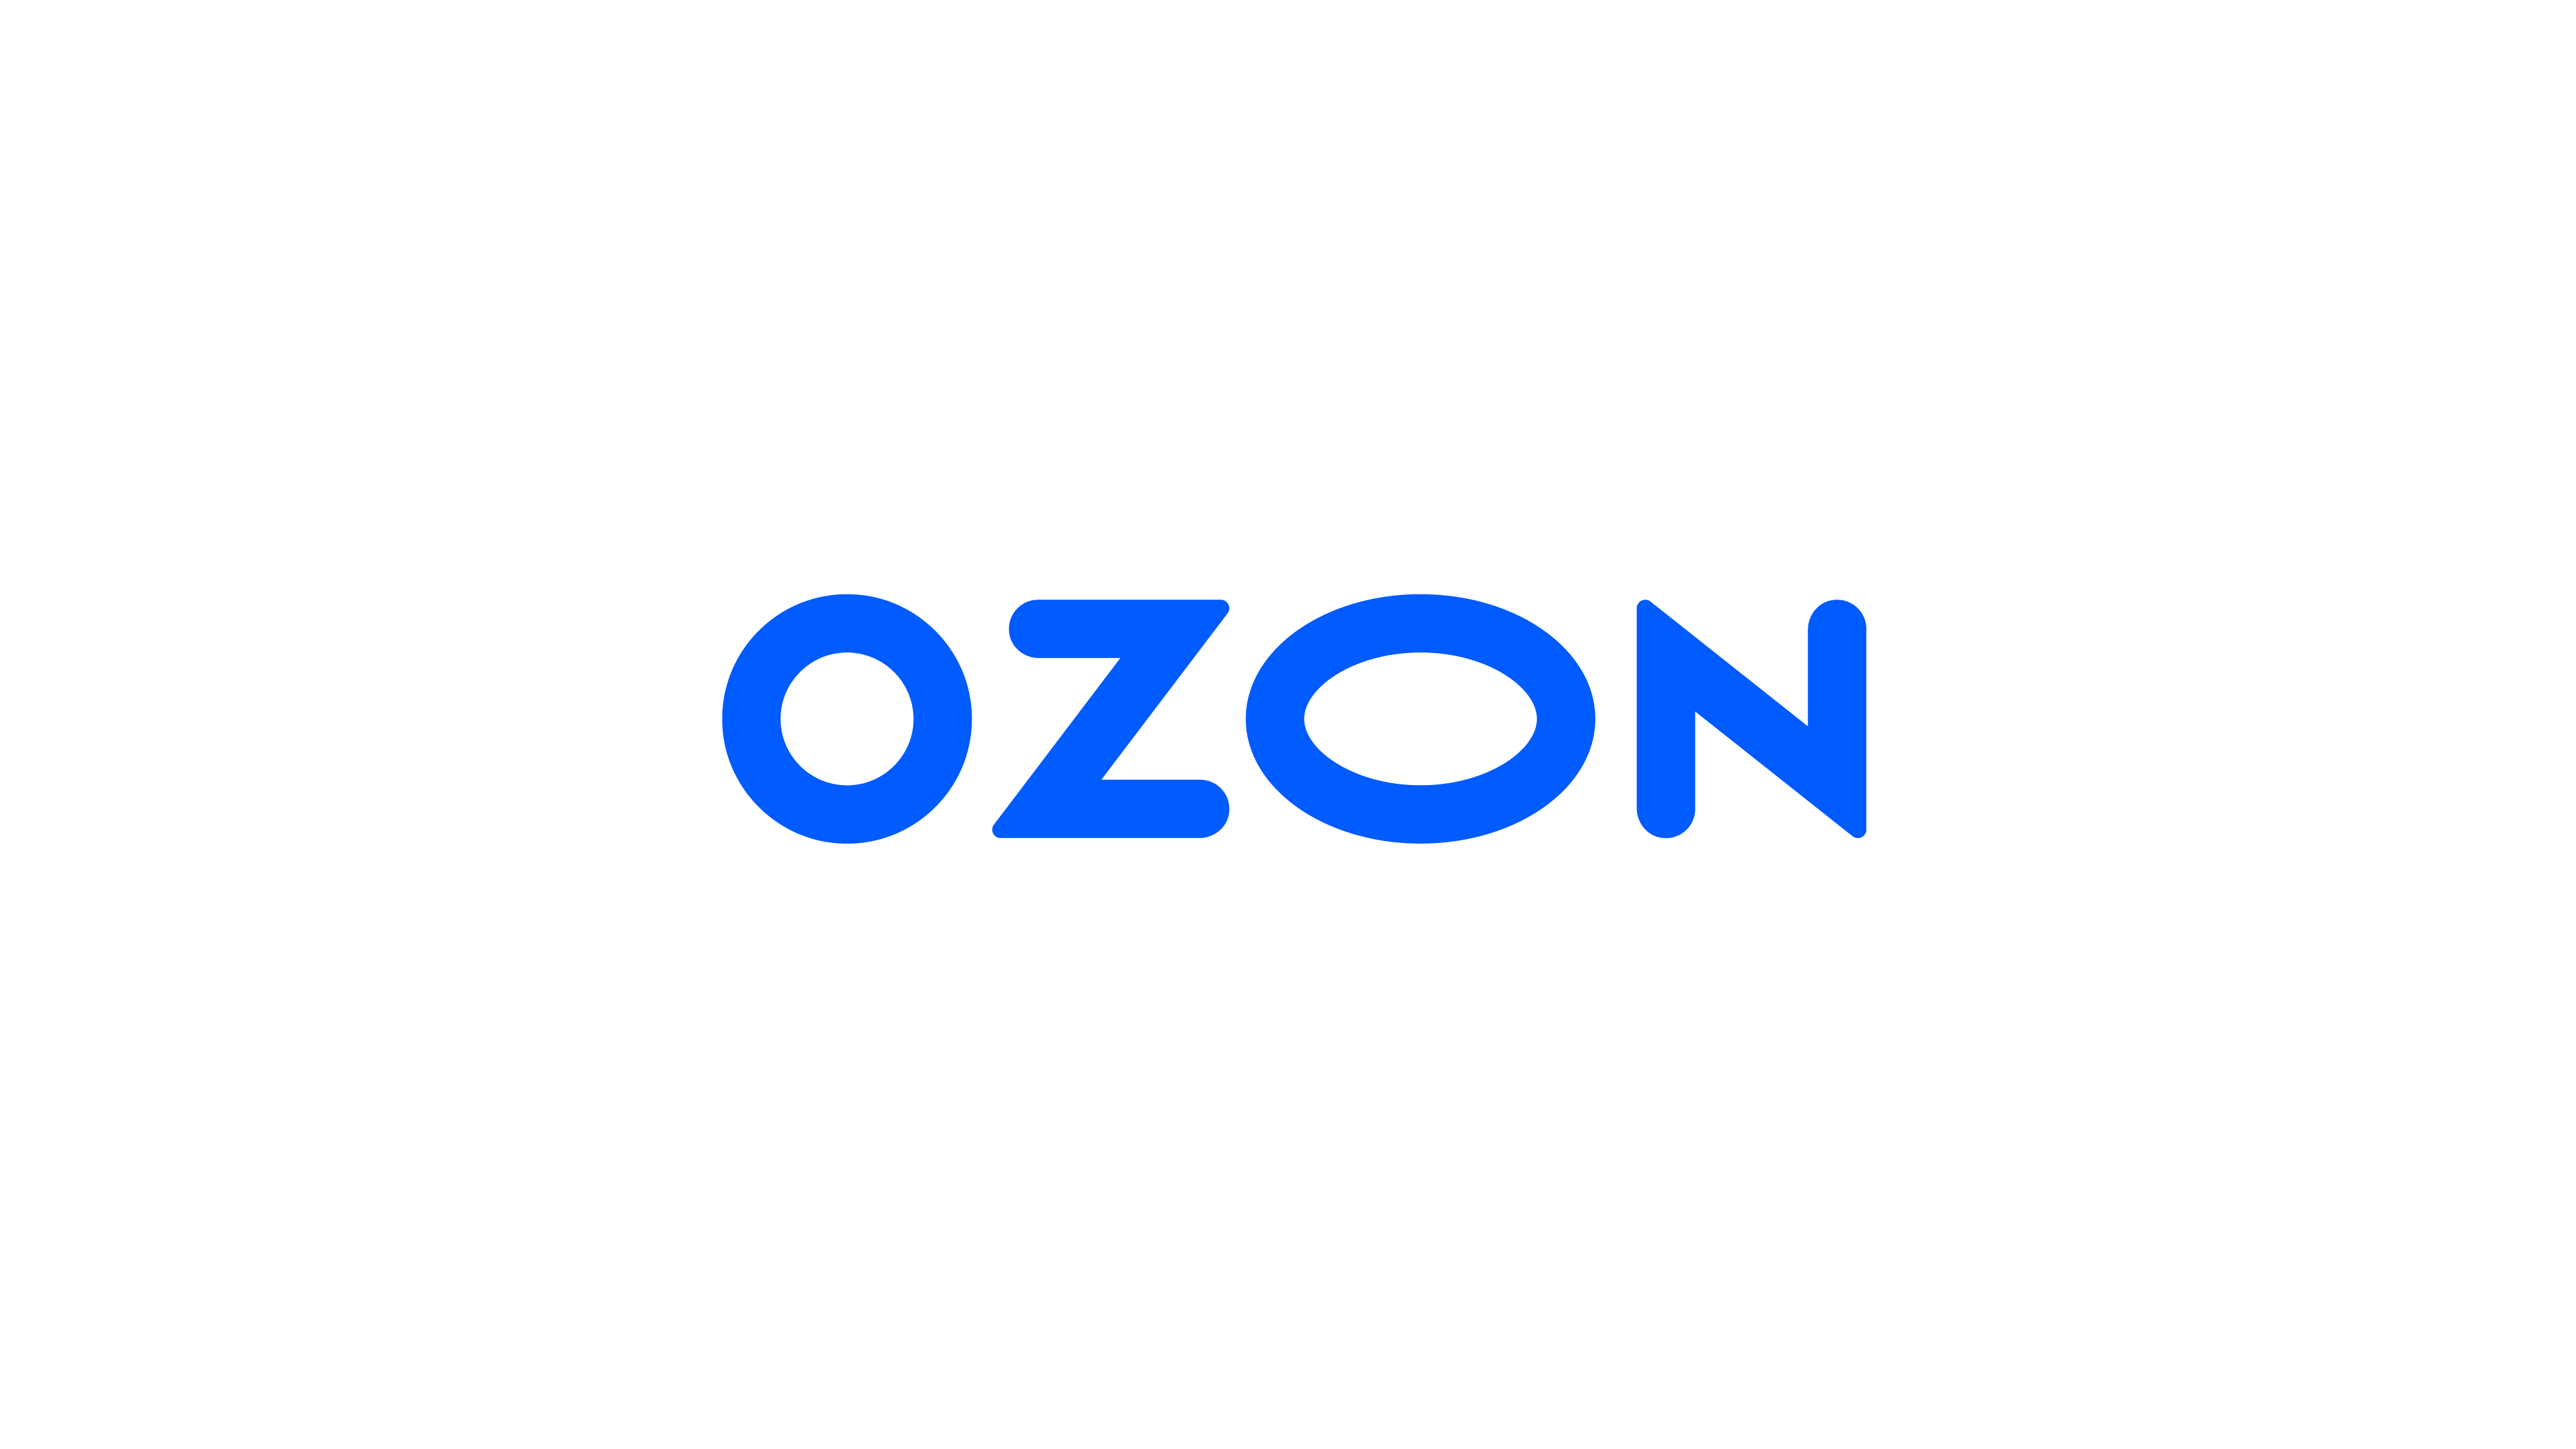 Ozon провел ребрендинг — сменил логотип и добавил малиновый цвет в оформление